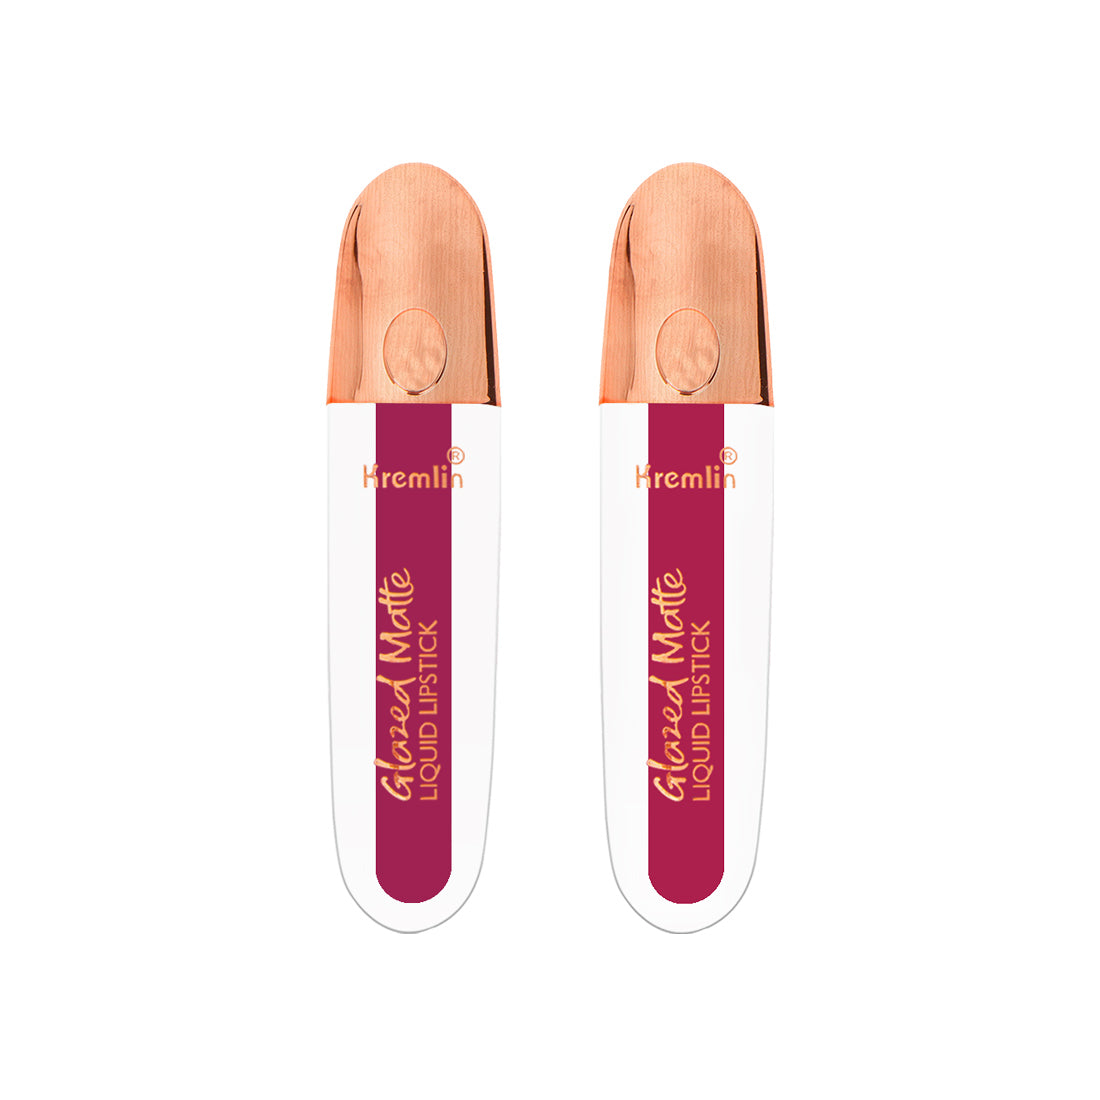 Kremlin Glazed Matte Liquid Lipstick Lips Pack of 2 (Rosette,Mermaid)